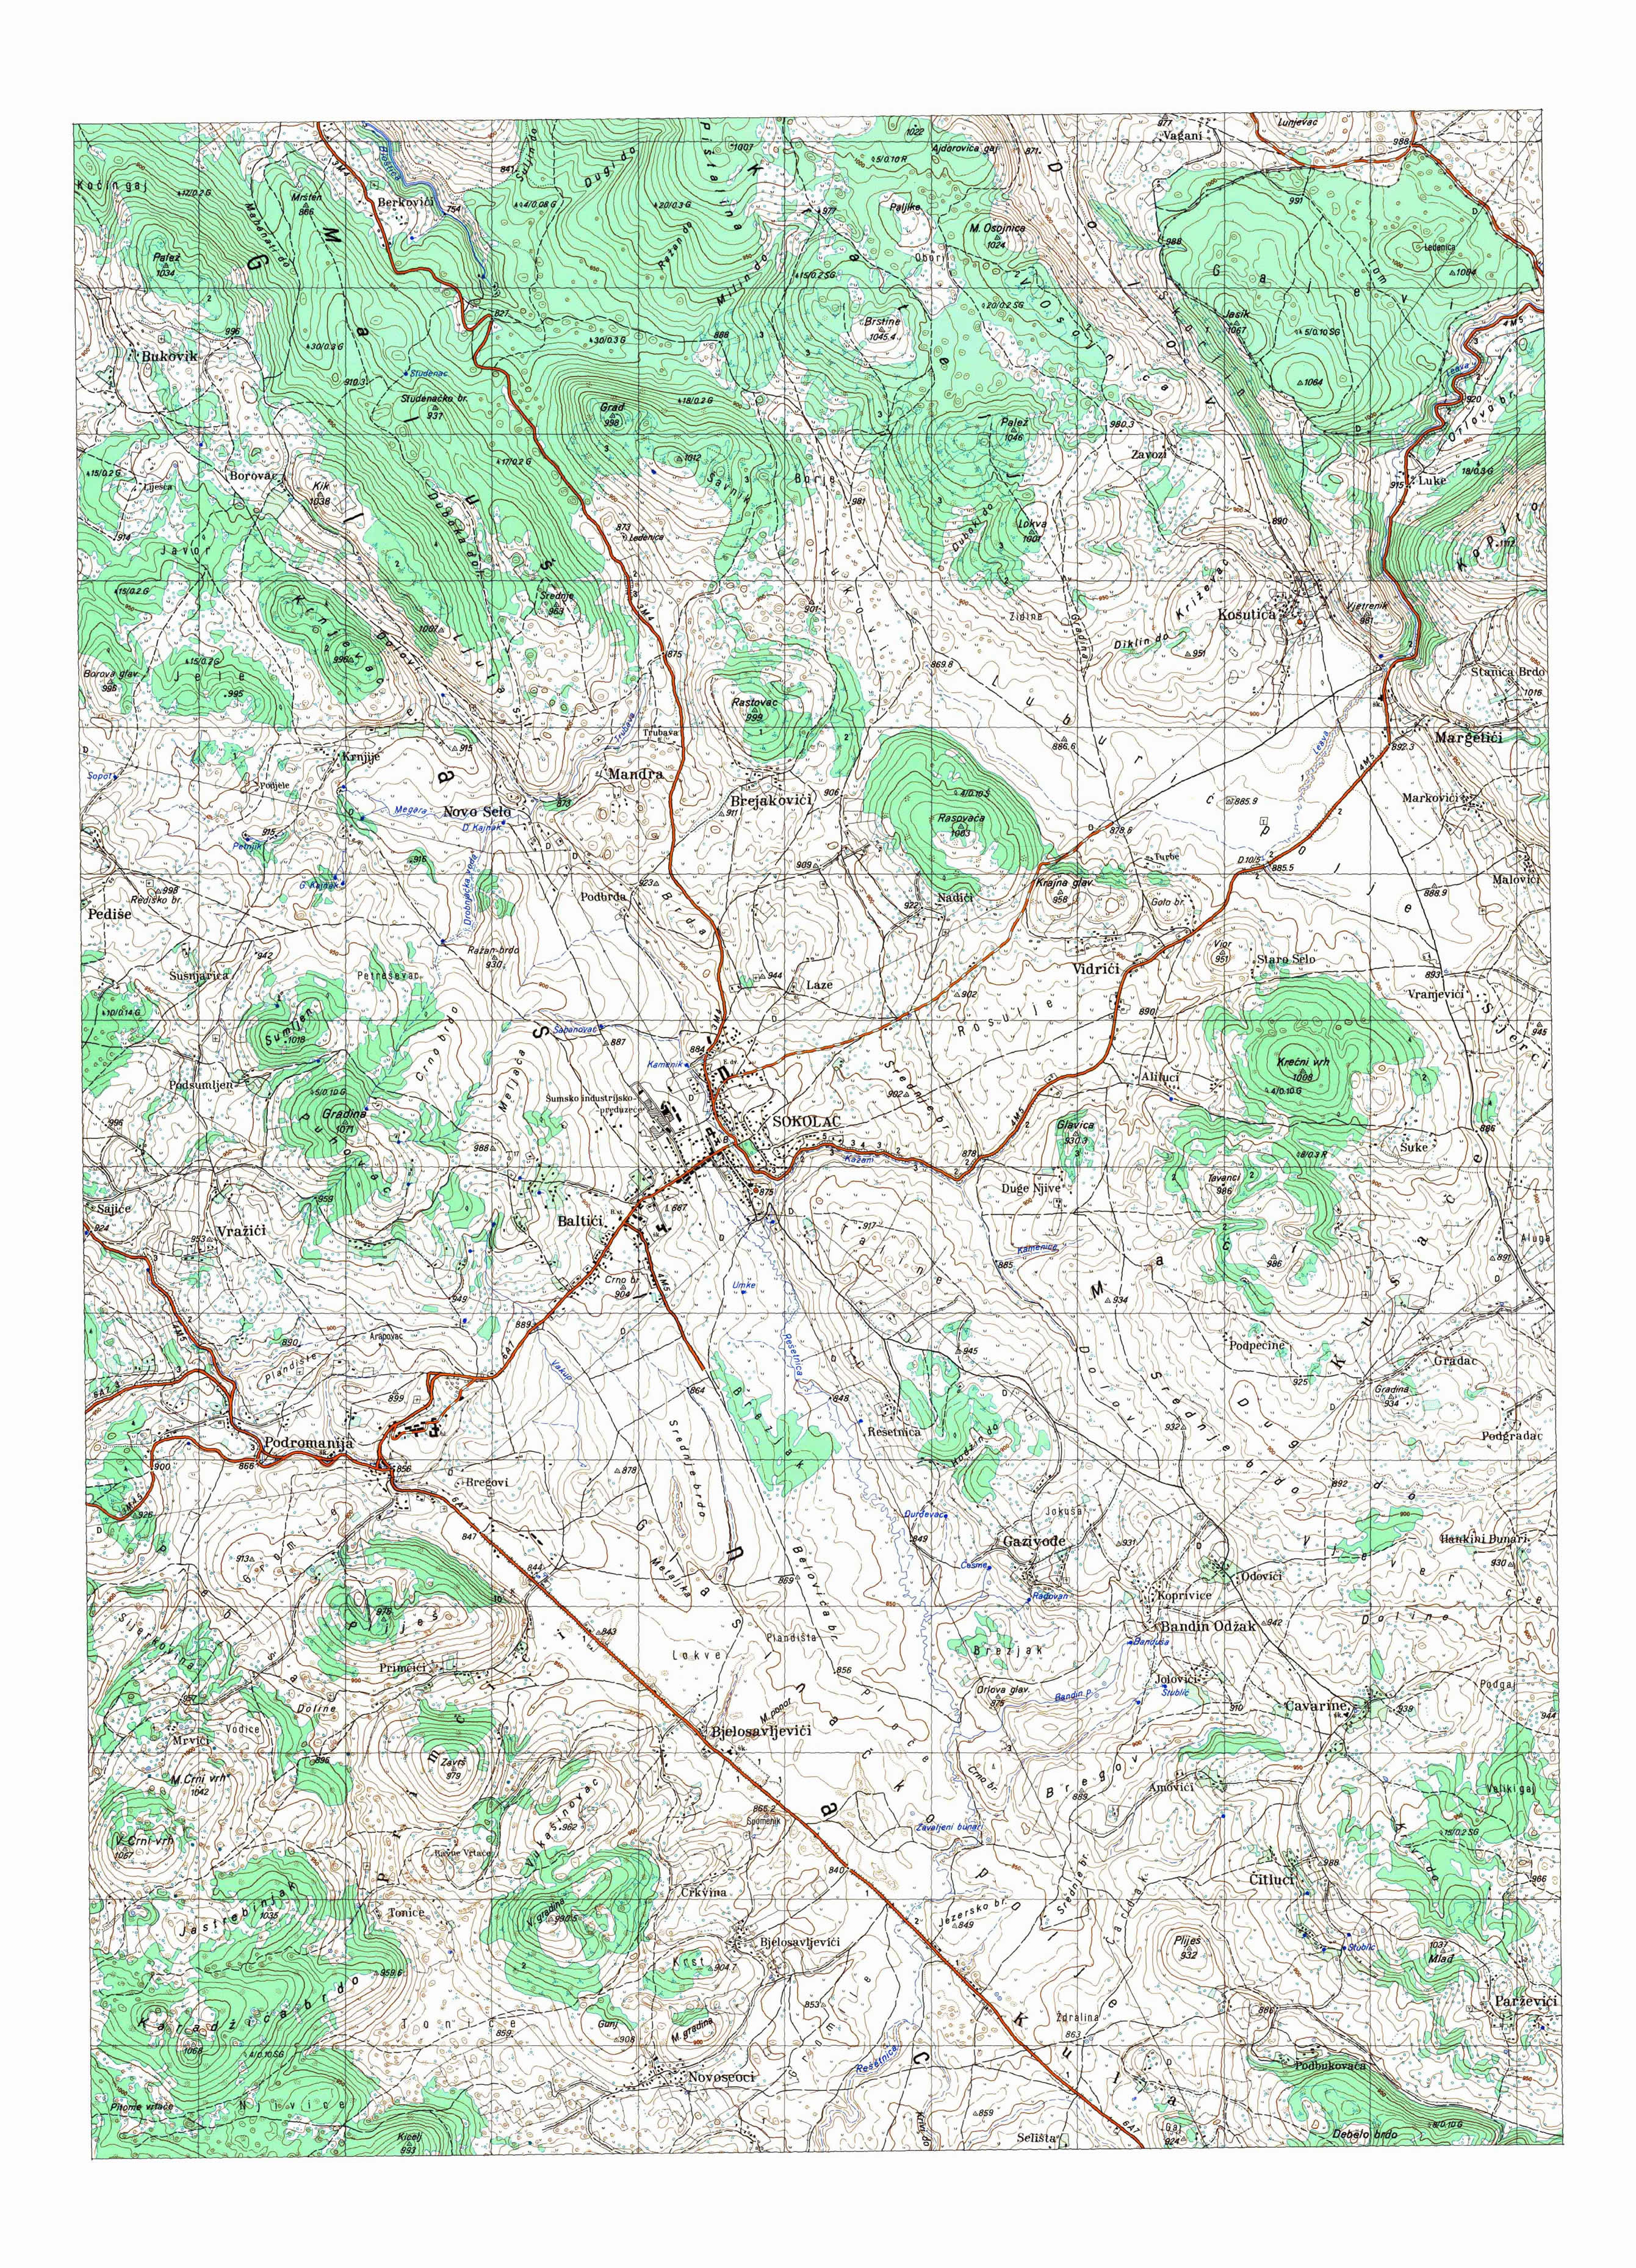  topografska karta BiH 25000 JNA  Goražde